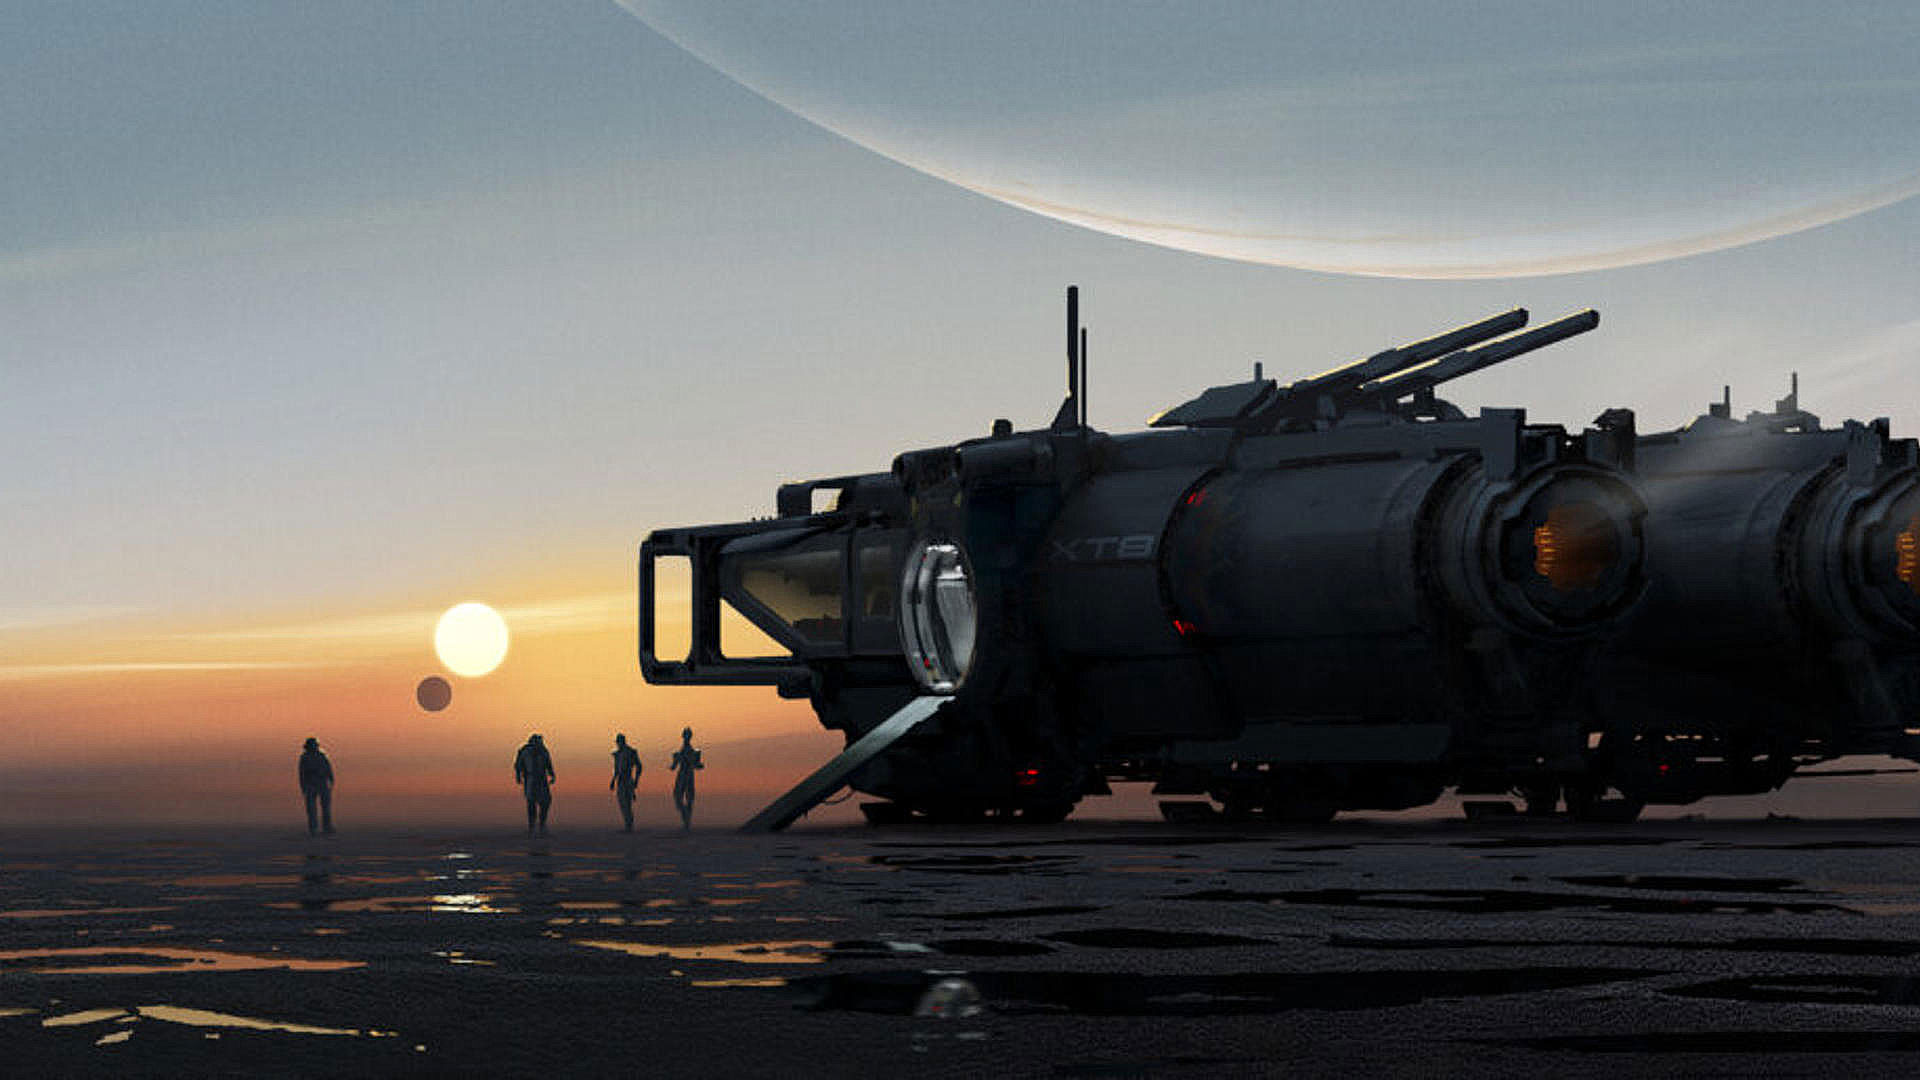 بایوور تصاویر هنری جدیدی از بازی بعدی Mass Effect را منتشر کرد